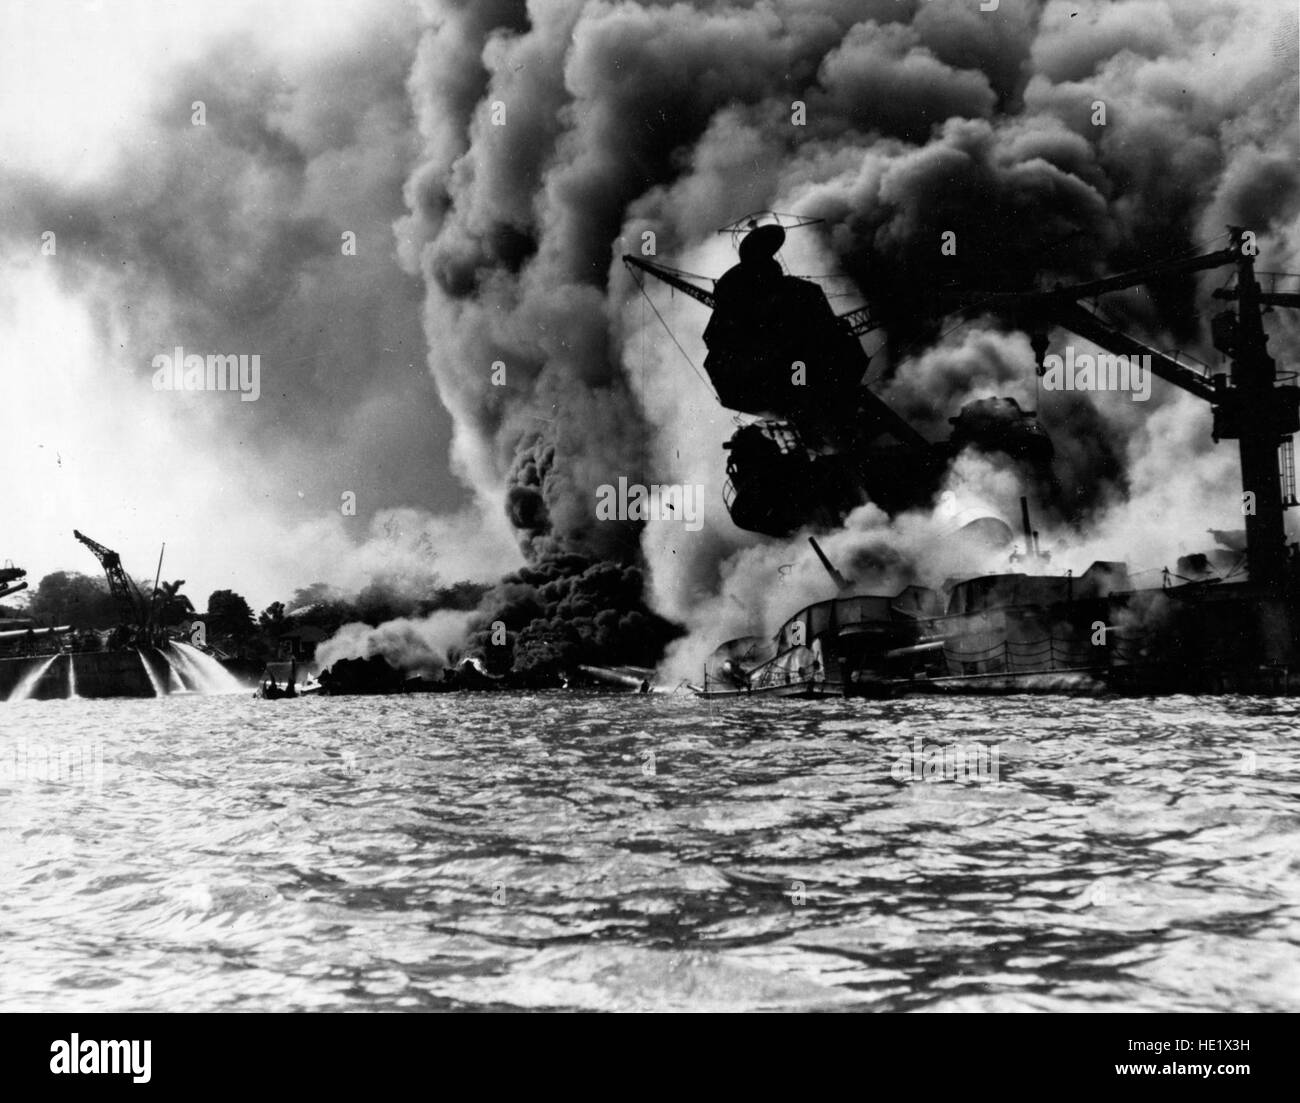 USS Arizona BB-39 versenkt und brennen wütend, 7. Dezember 1941. Ihre vorderen Magazine hatte explodiert, wenn sie durch eine japanische Bombe getroffen wurde. Auf der linken Seite spielen Männer auf dem Heck der USS Tennessee BB-43 Feuerwehrschläuchen auf dem Wasser, brennendes Öl Weg von ihrem Schiff offiziellen US Navy fotografieren, jetzt in den Sammlungen der National Archives zu zwingen. Stockfoto